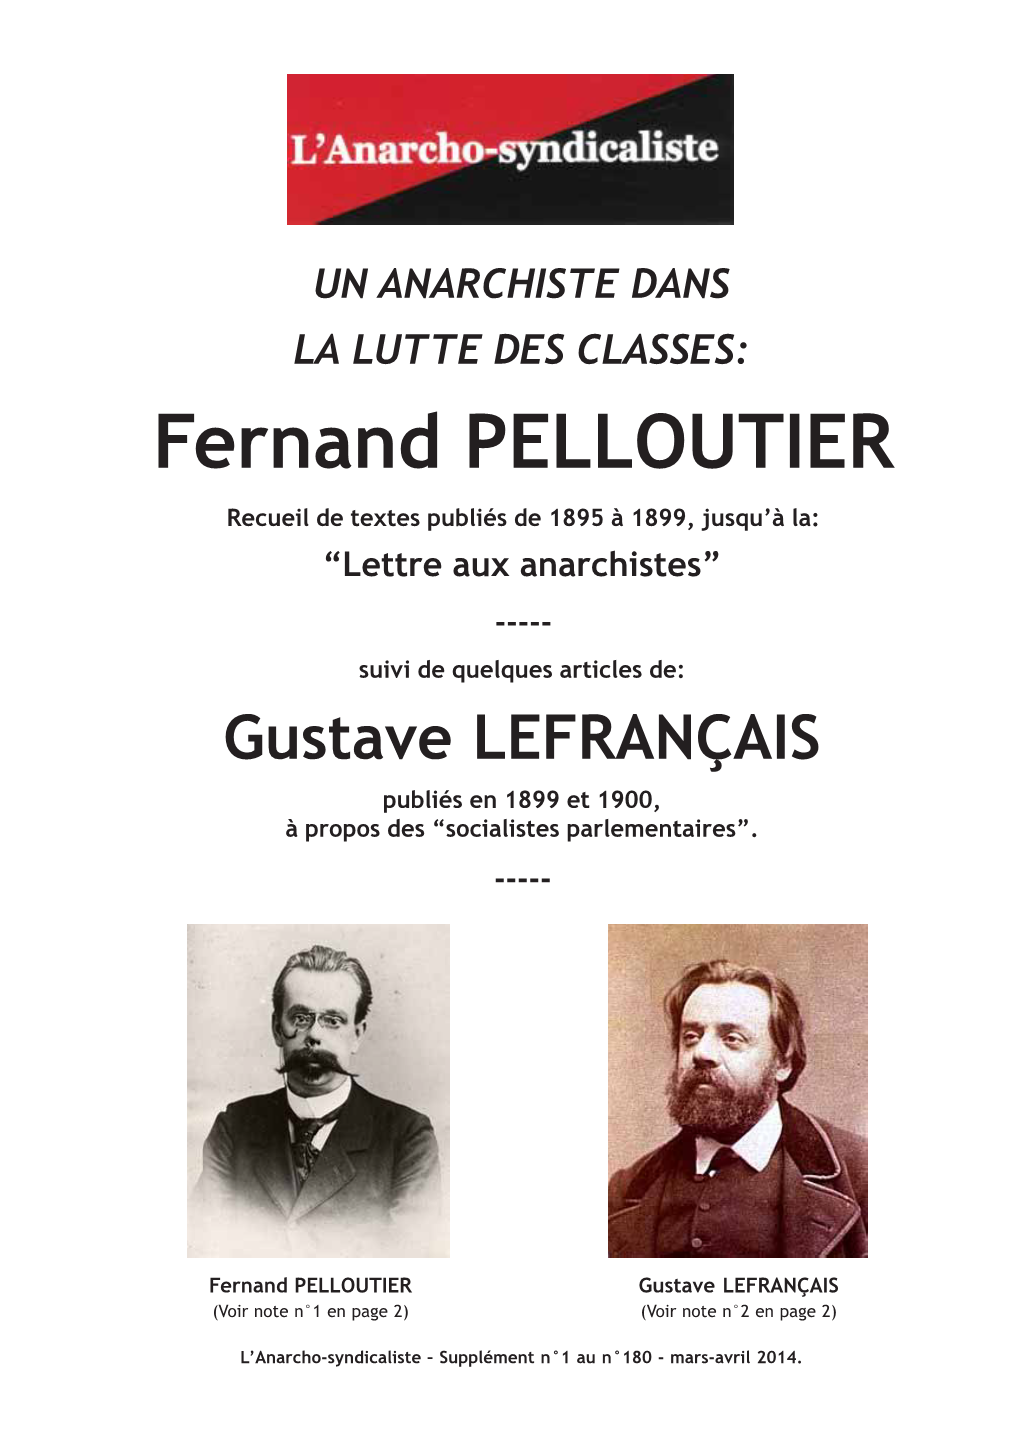 Fernand PELLOUTIER